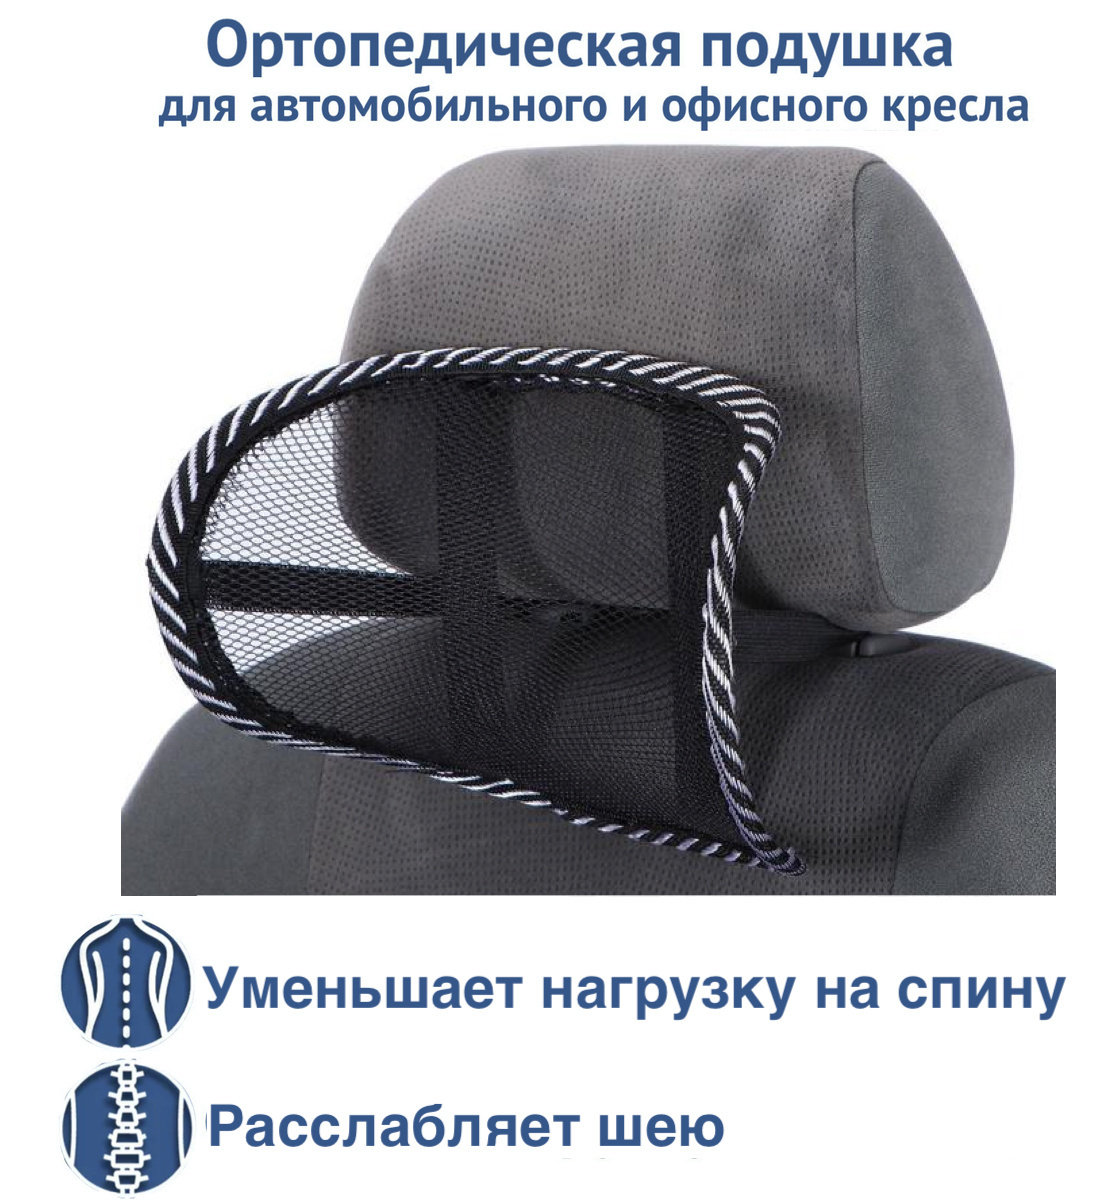 Подушка для спины в офисное кресло